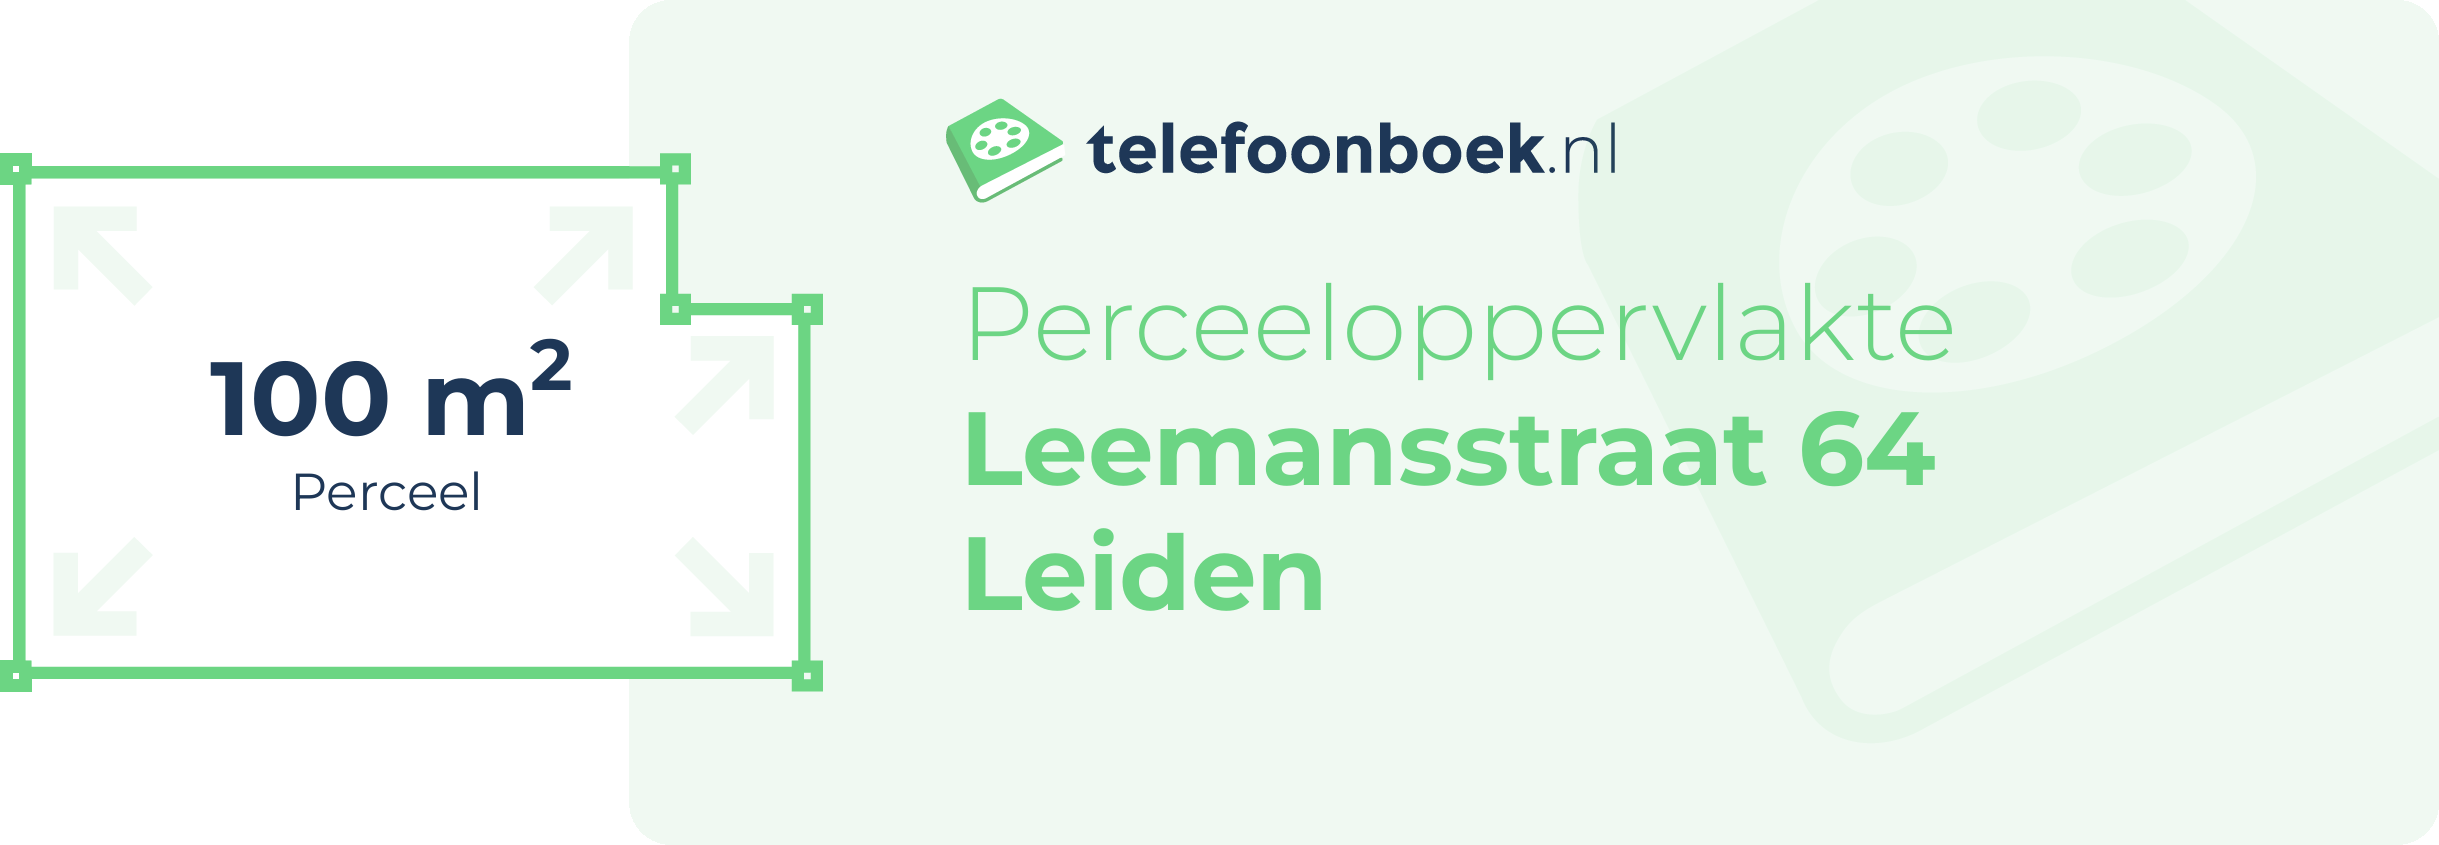 Perceeloppervlakte Leemansstraat 64 Leiden